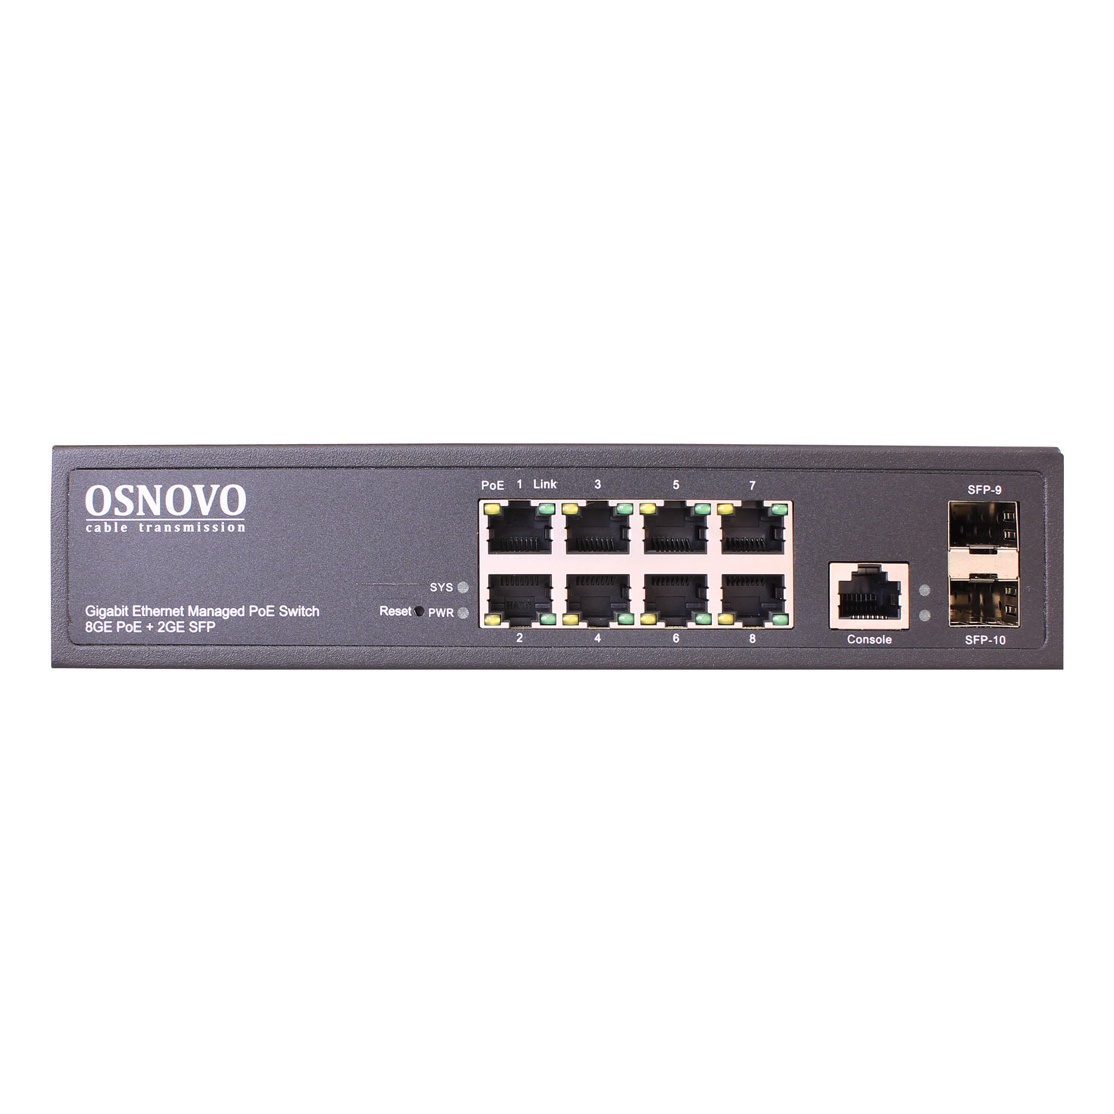 OSNOVO SW-80802/L(150W) SW-80802/L(150W) Управляемый L2 PoE коммутатор Gigabit Ethernet на 8 RJ45 PoE + 2 x GE SFP порта